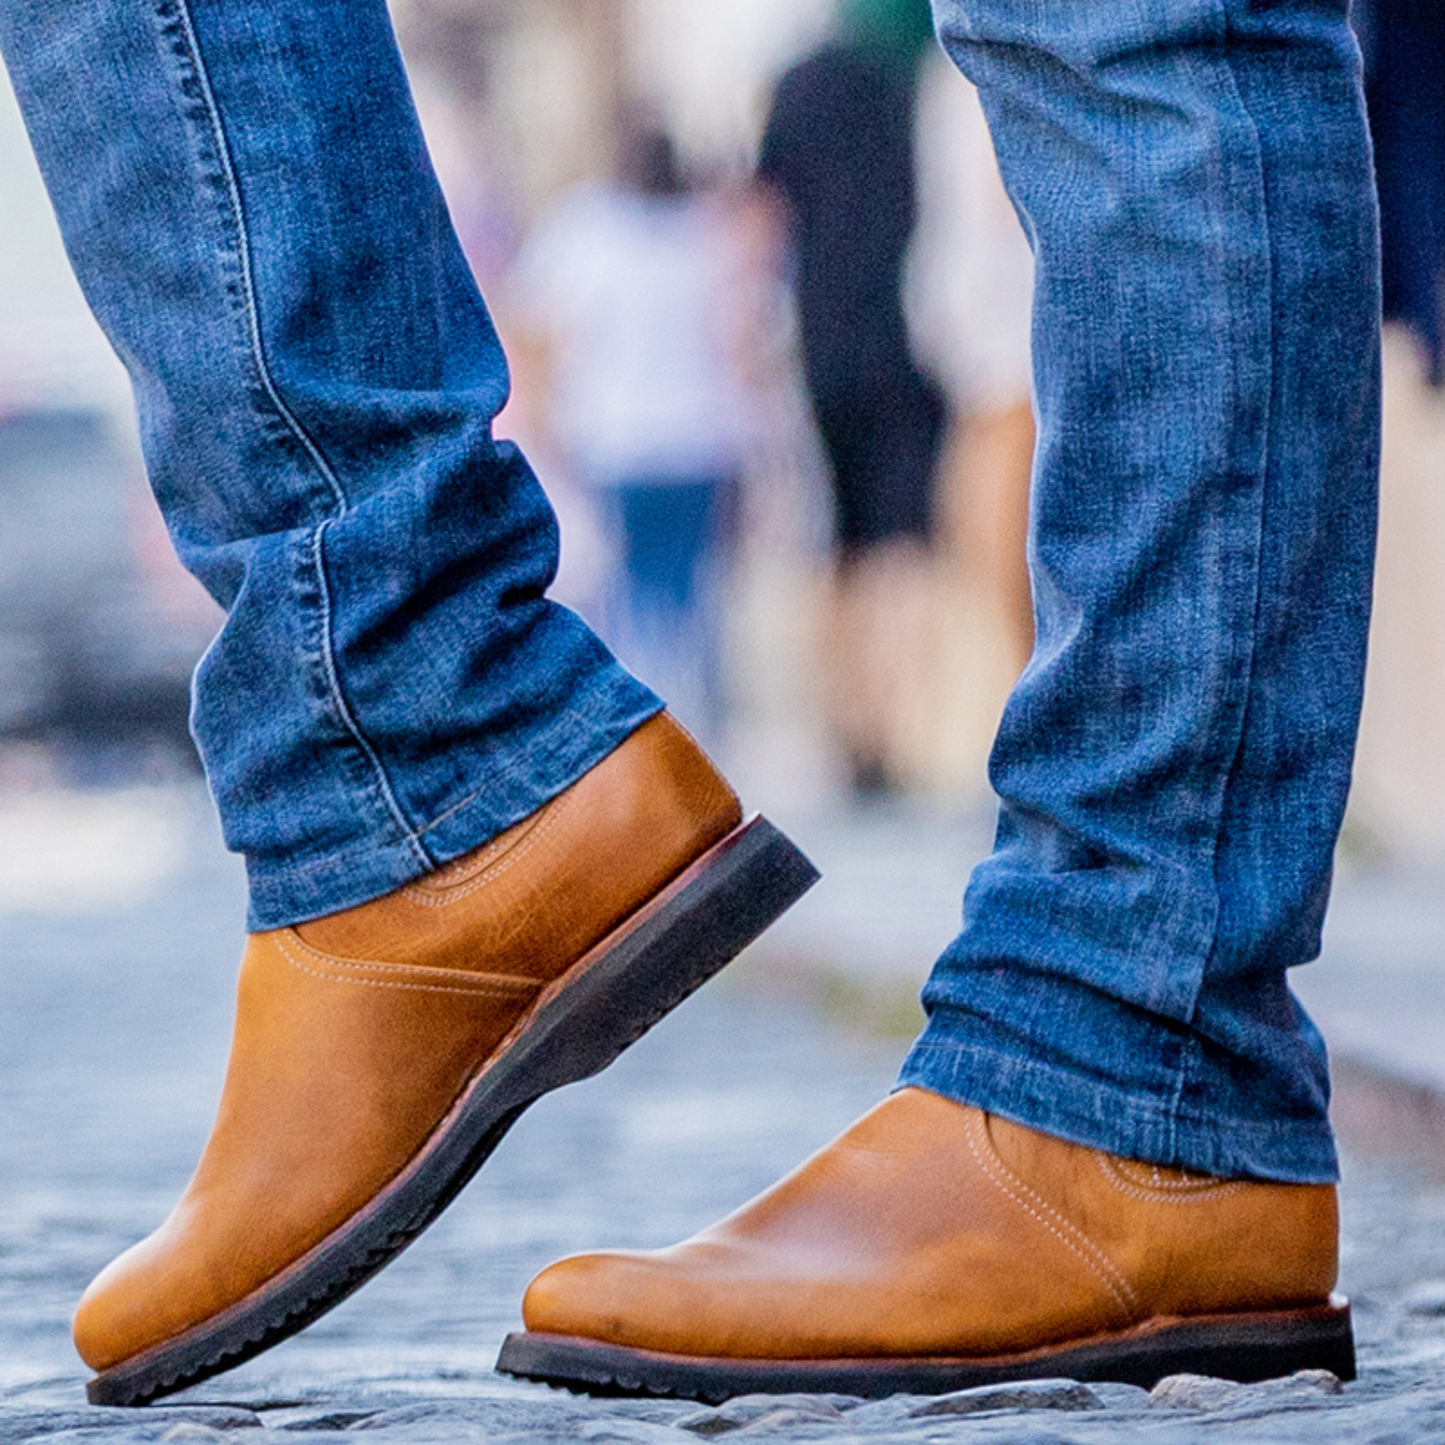 Sierra Leather Men's Boots